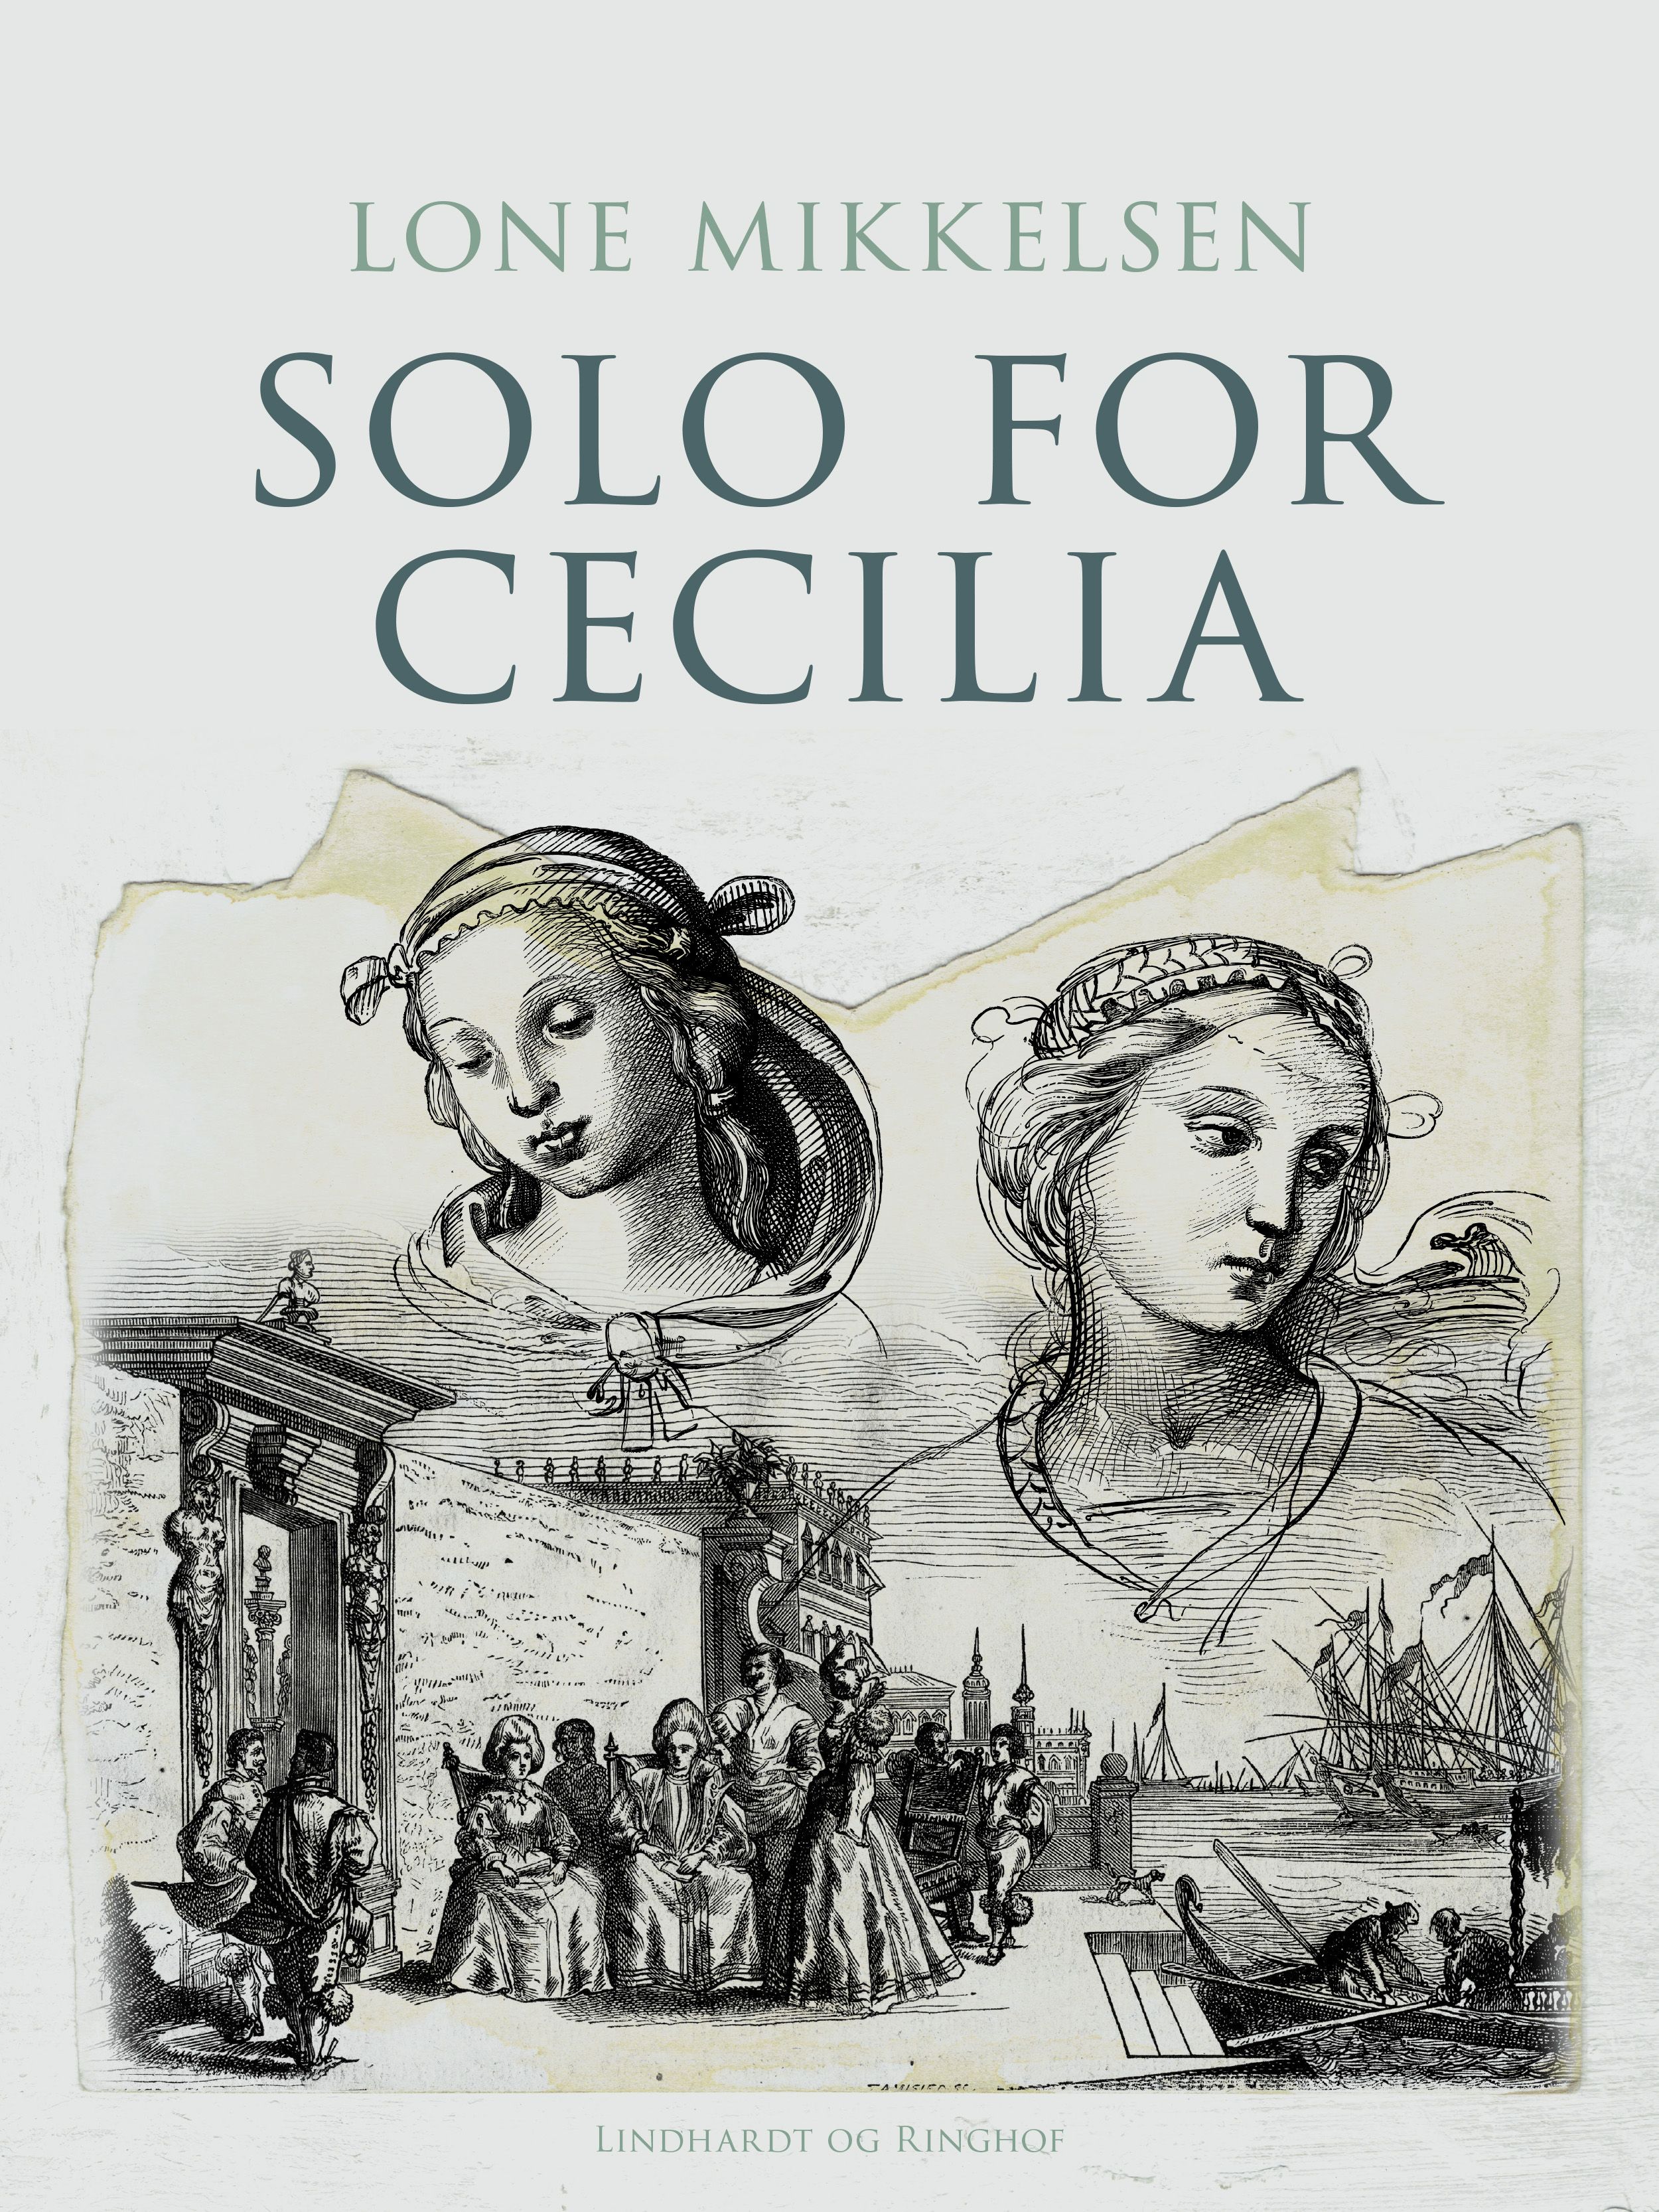 Solo for Cecilia, e-bog af Lone Mikkelsen